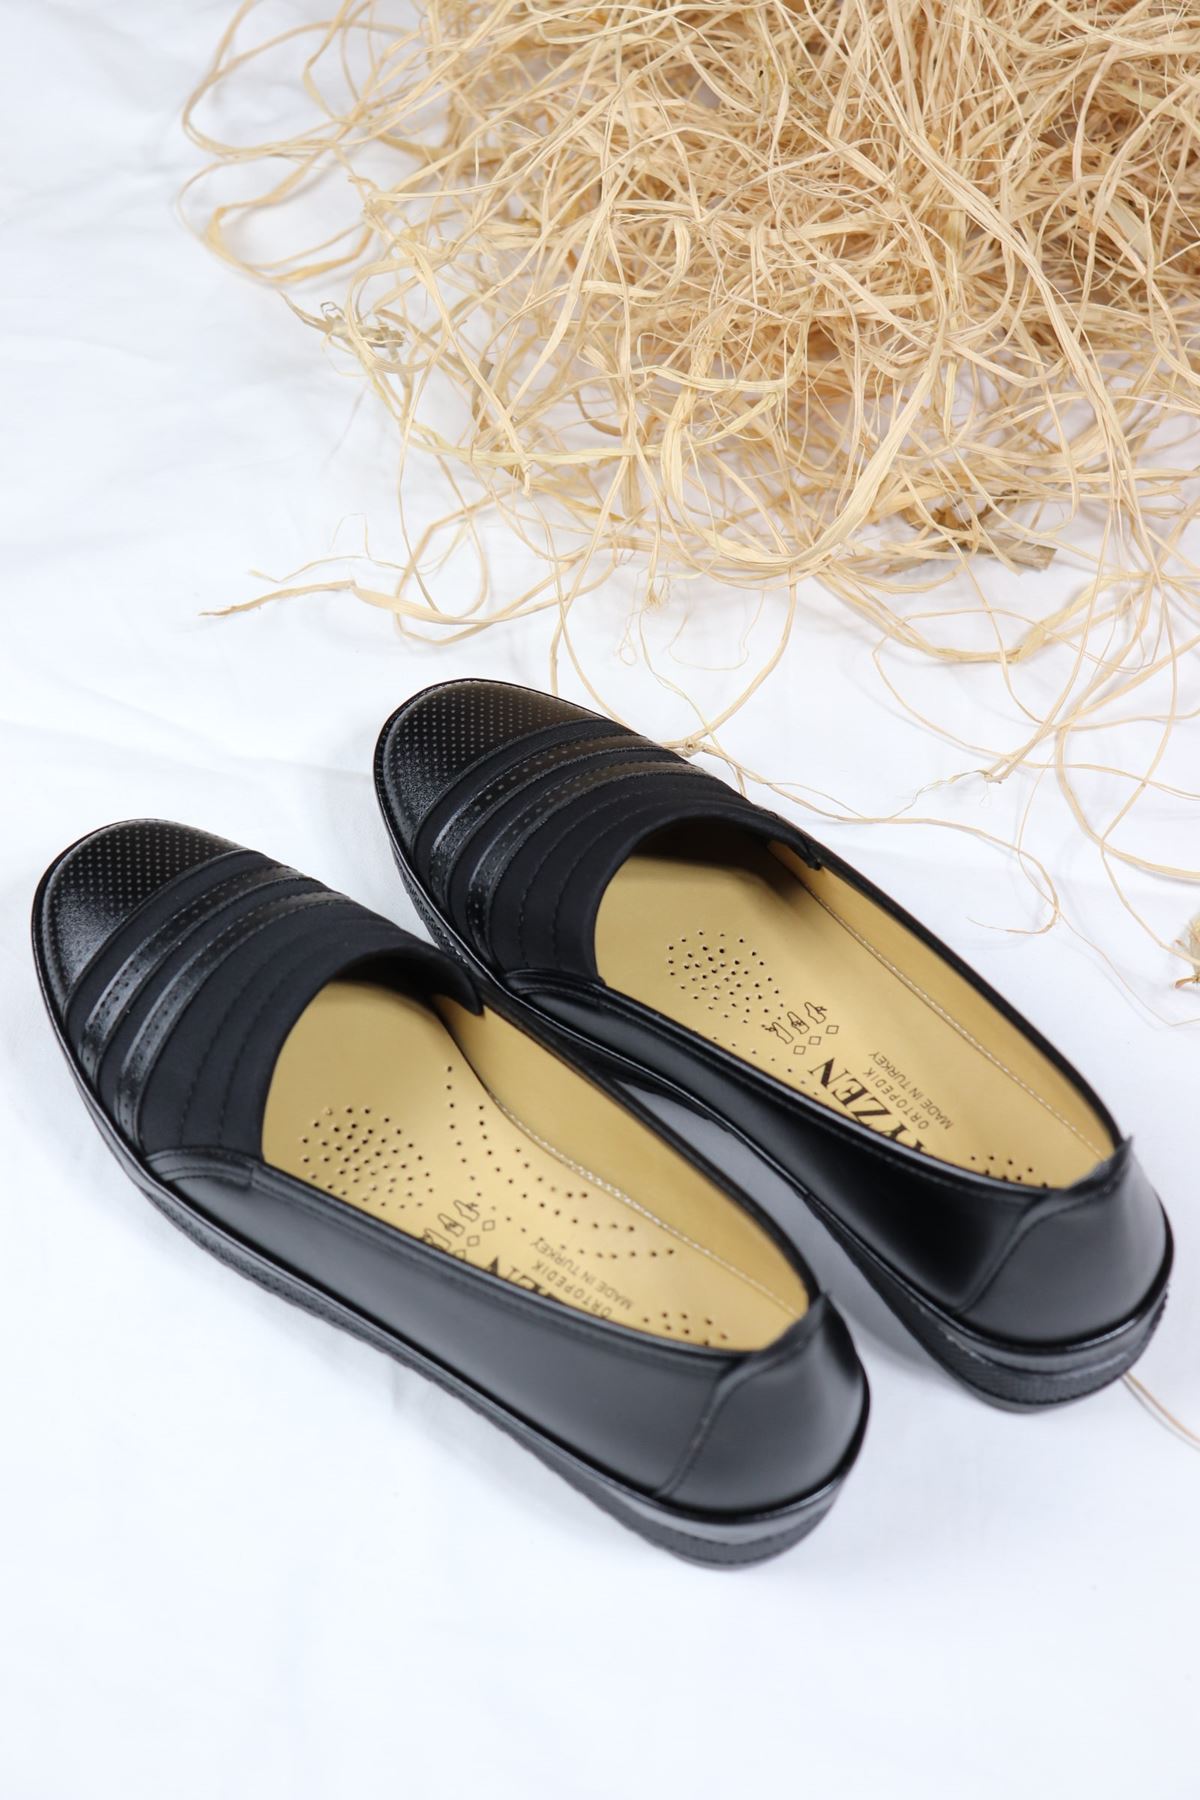 Trendayakkabı - Ortapedik Siyah Anne Ayakkabı 